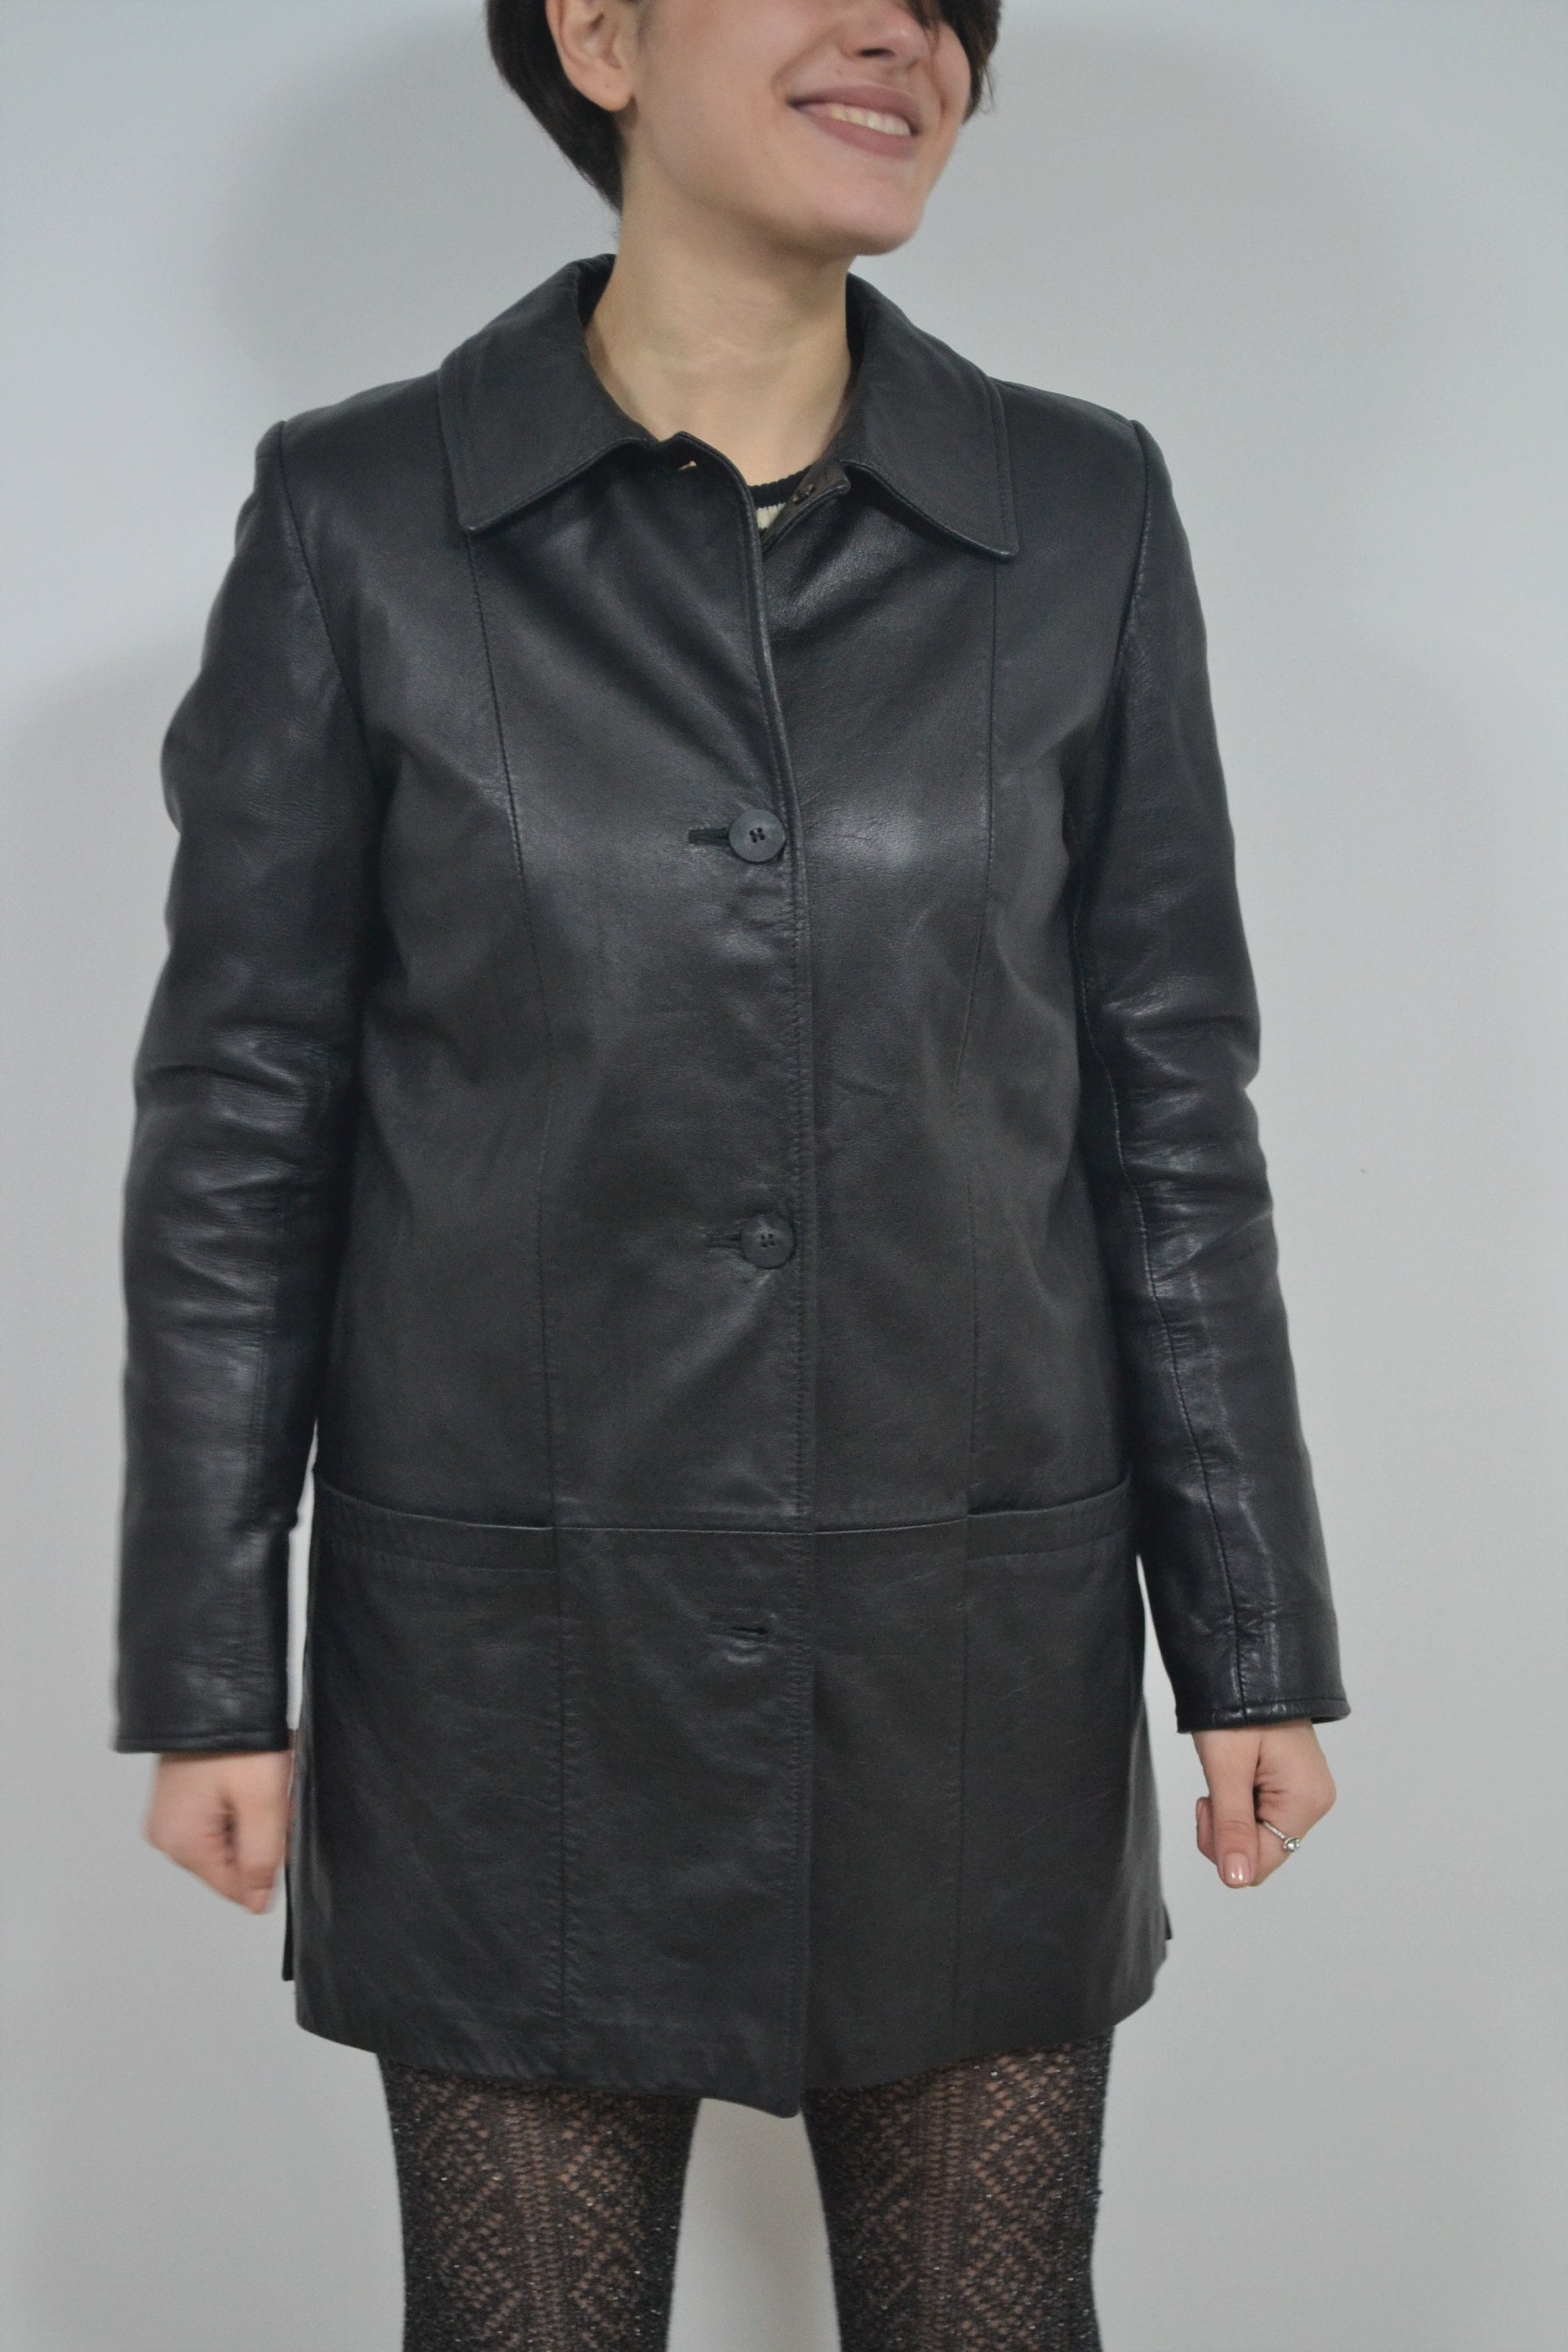 Womens Leather Coat, Duster Coat, Vintage Leather Jacket - Etsy UK